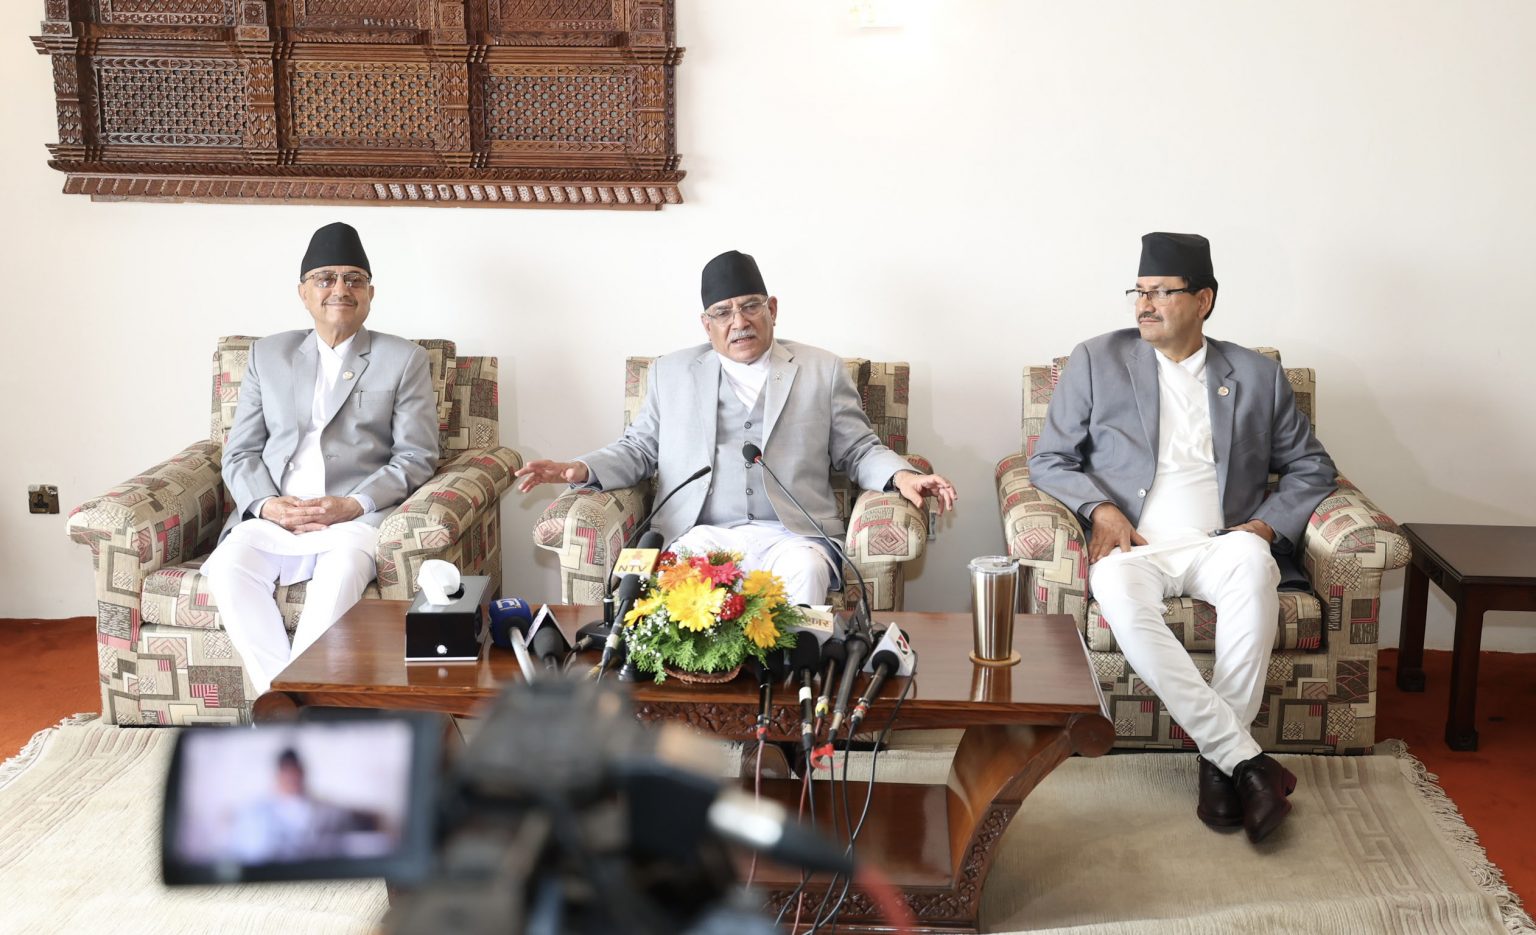 नेपाल र चीनबिचका सबै नाका खोल्ने सहमति भएको छ : प्रधानमन्त्री